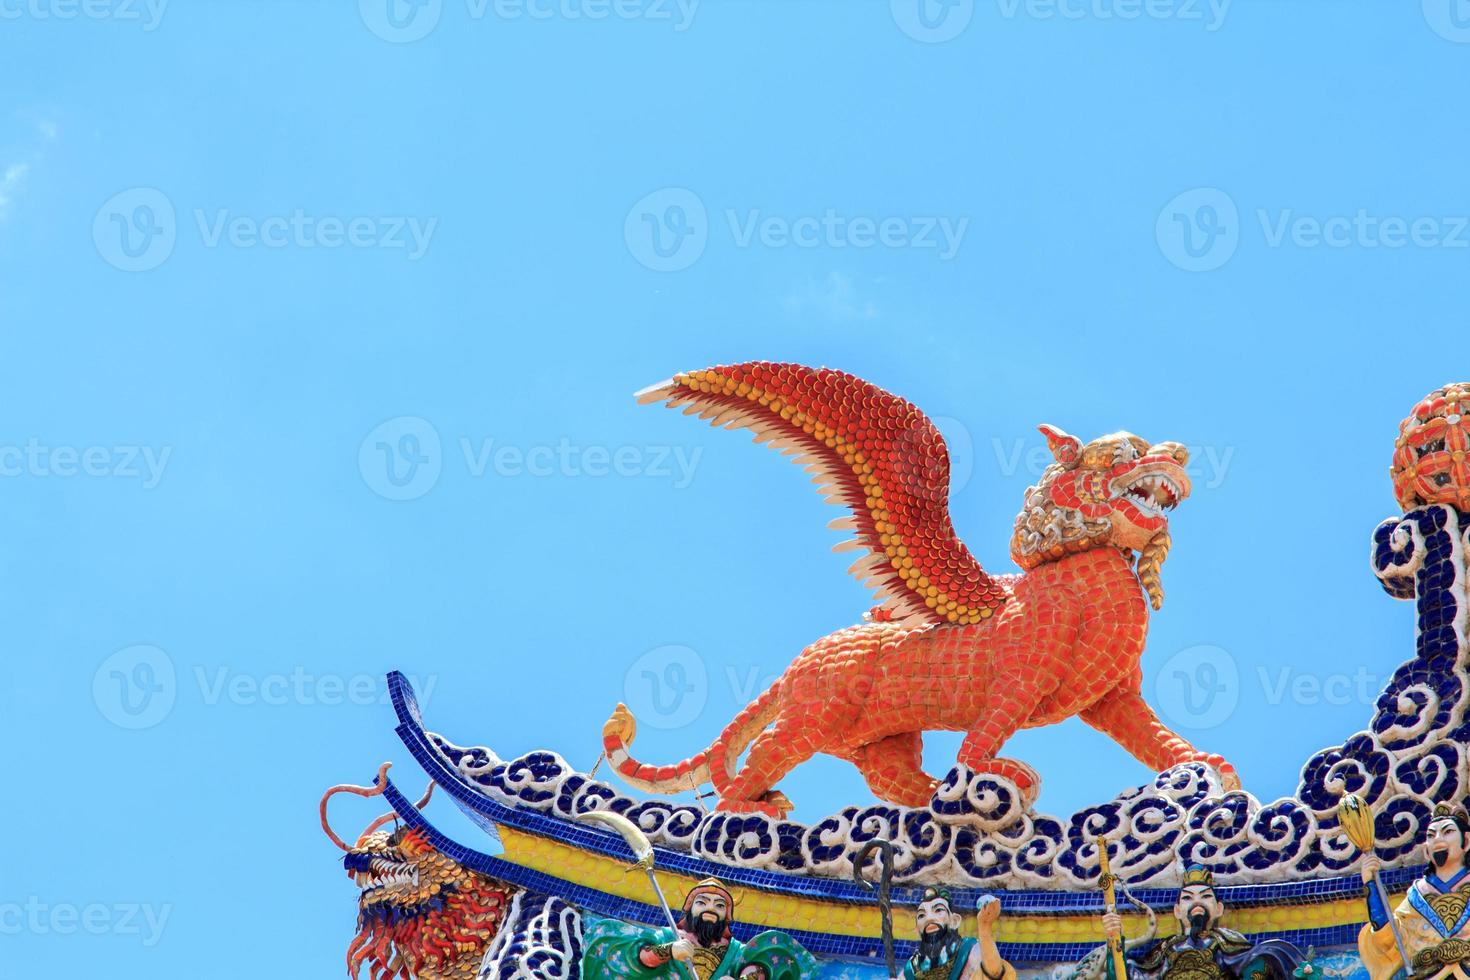 estátuas de tigres voadores, um animal mítico da literatura chinesa, são frequentemente decoradas em templos e no telhado como belas esculturas. foto